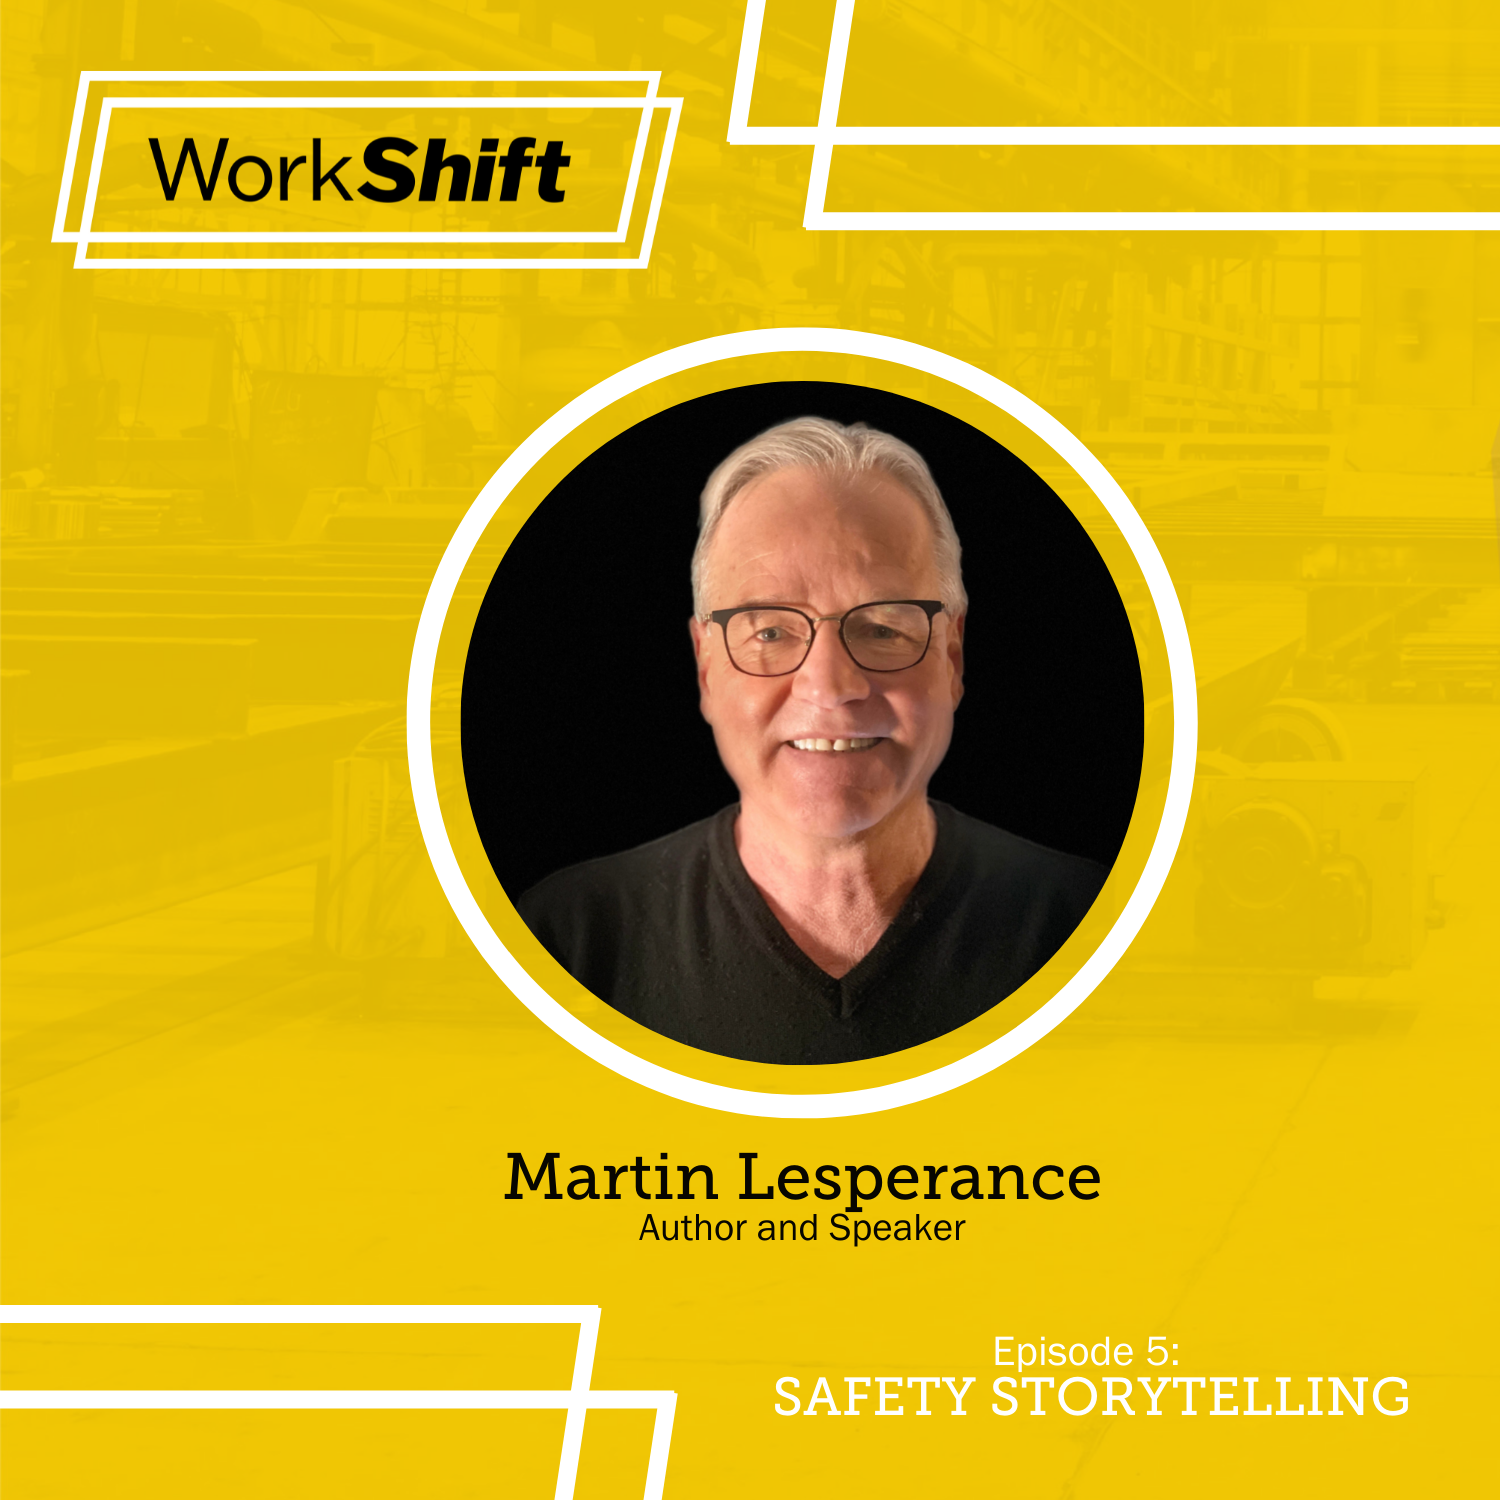 Martin Lesperance for the WorkShift podcast